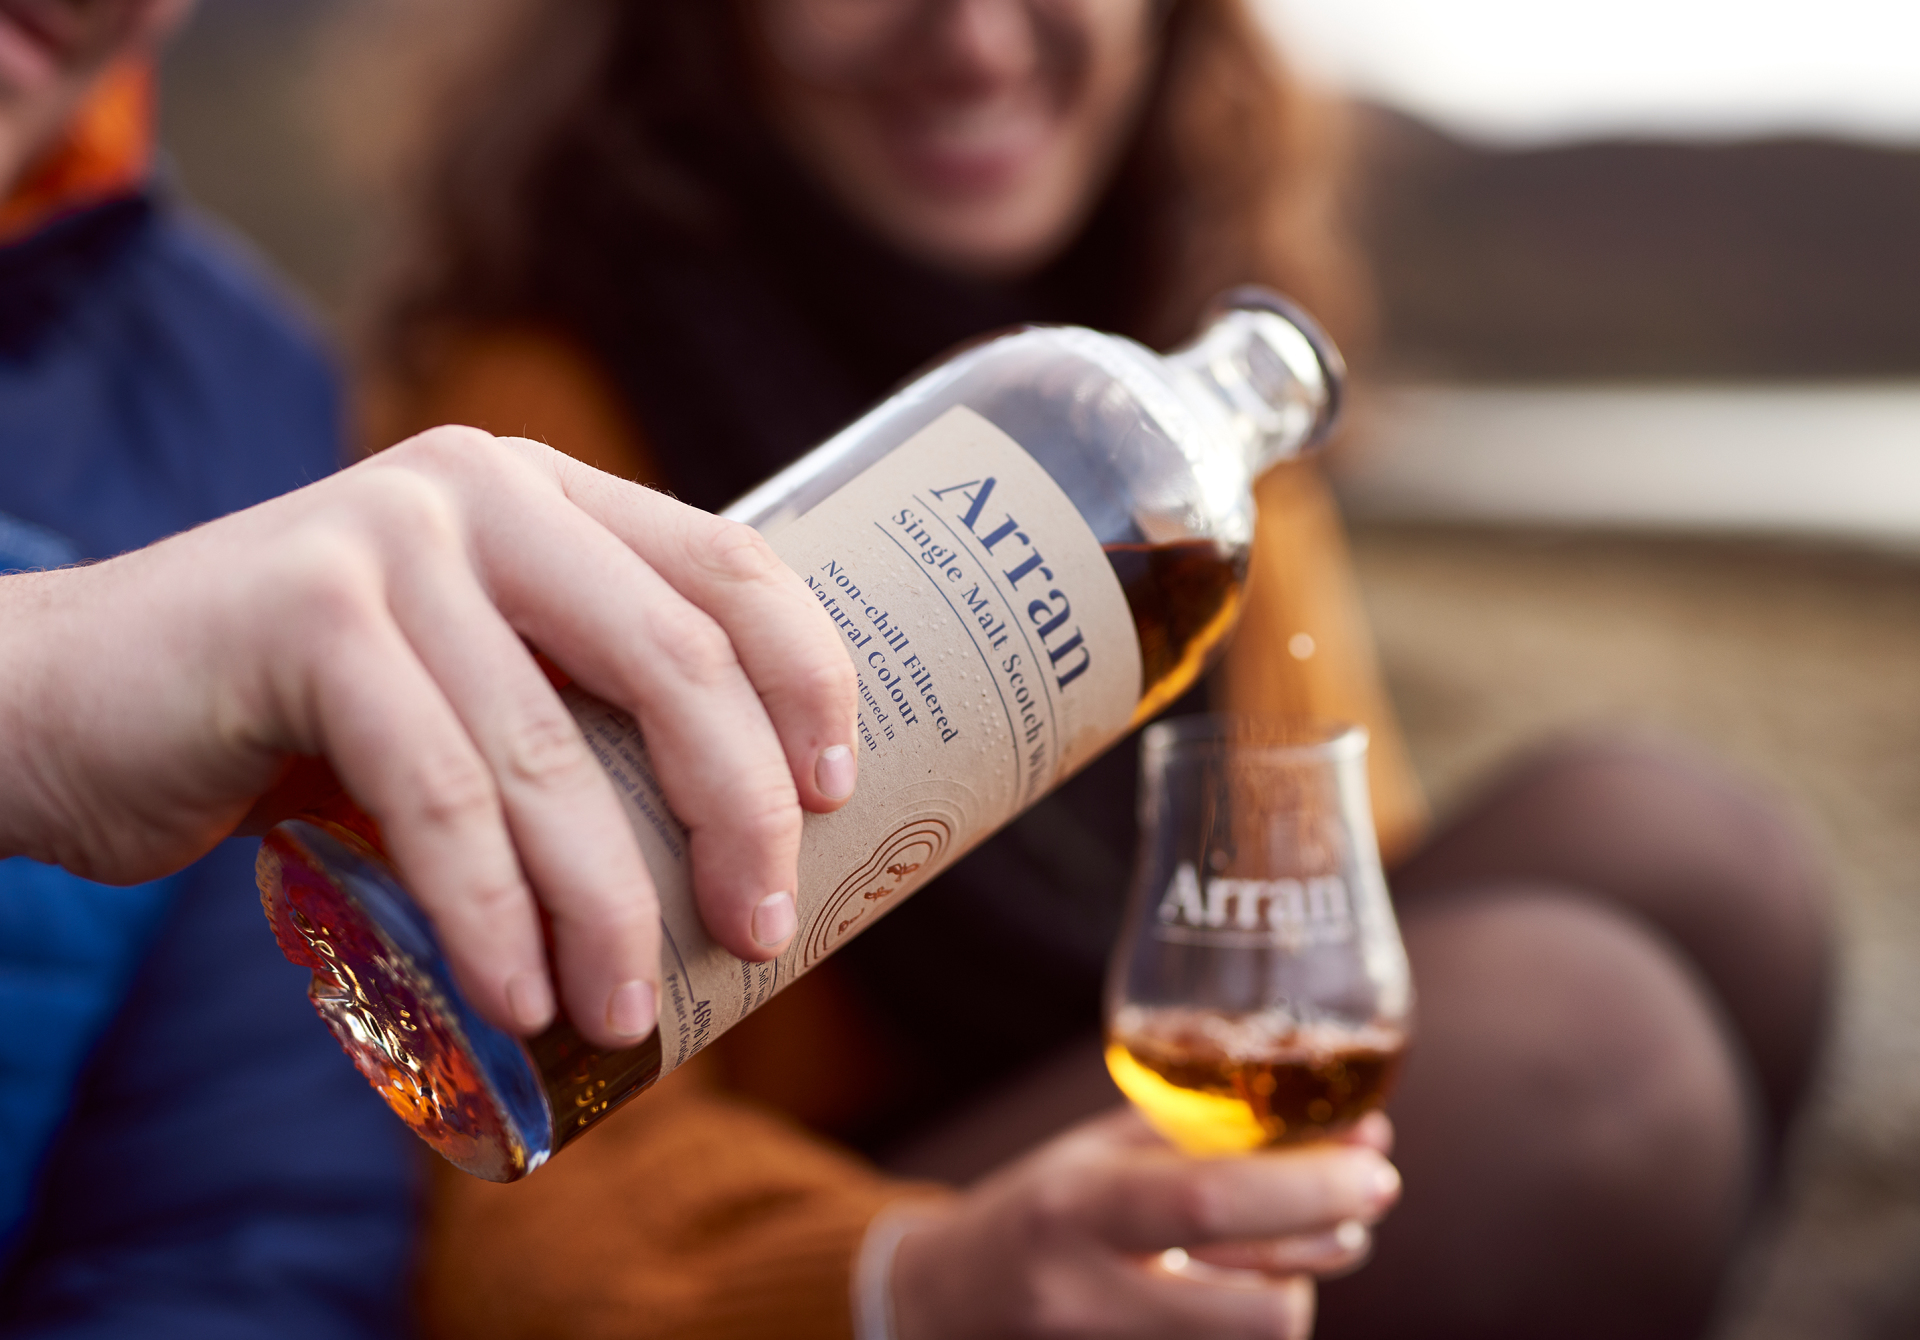 Award-winning Whisky & Distillery, Isle of Arran